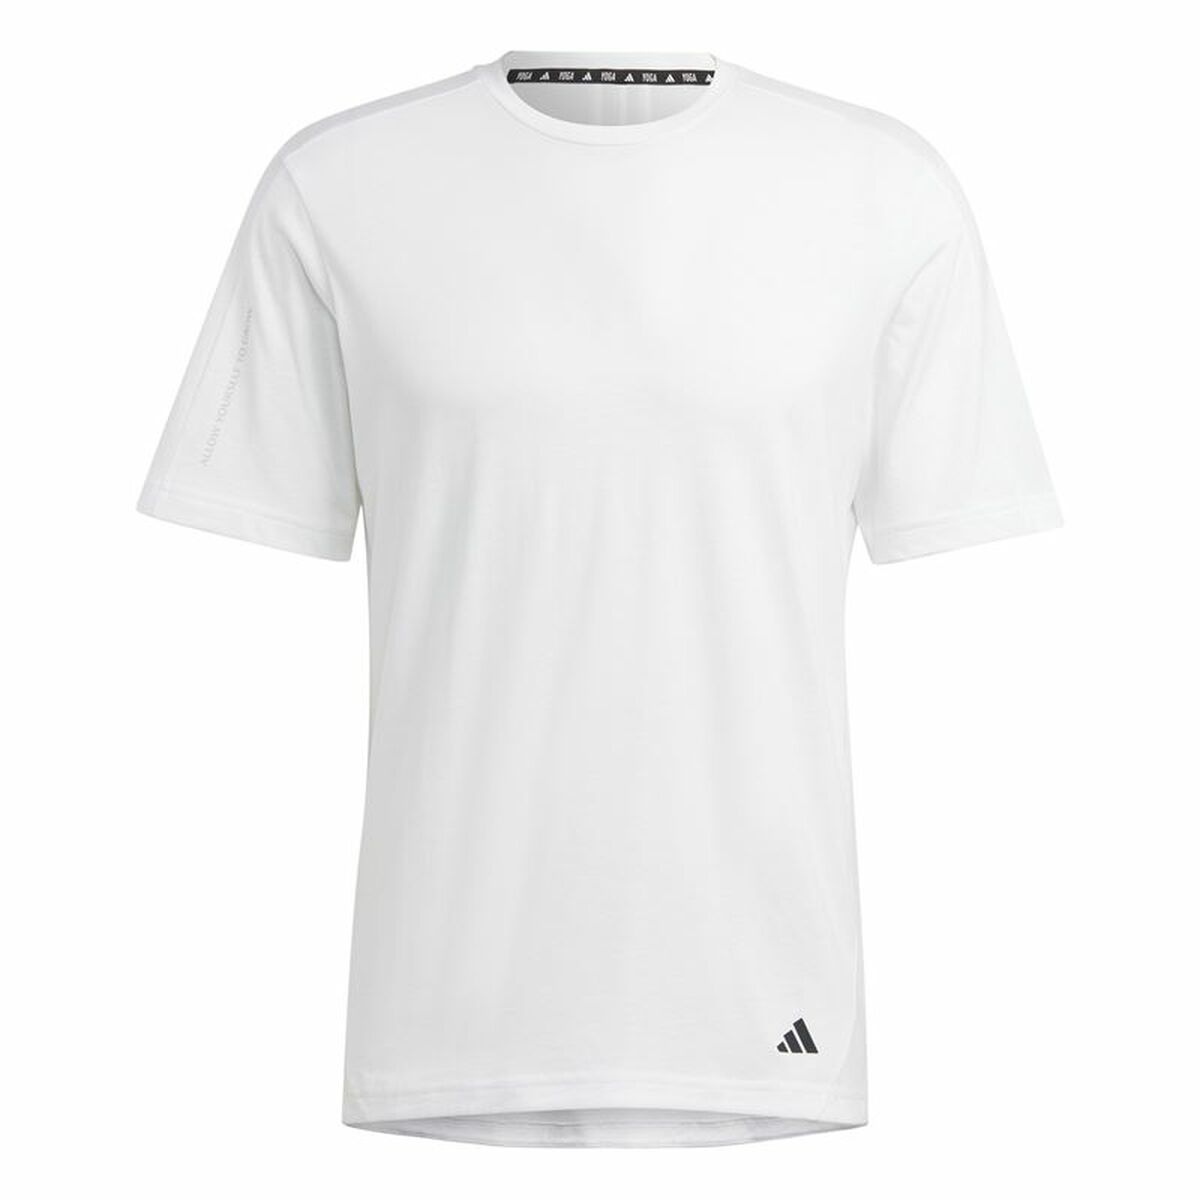 Osta tuote Miesten T-paita Adidas Base Valkoinen (Koko: L) verkkokaupastamme Korhone: Urheilu & Vapaa-aika 20% alennuksella koodilla VIIKONLOPPU